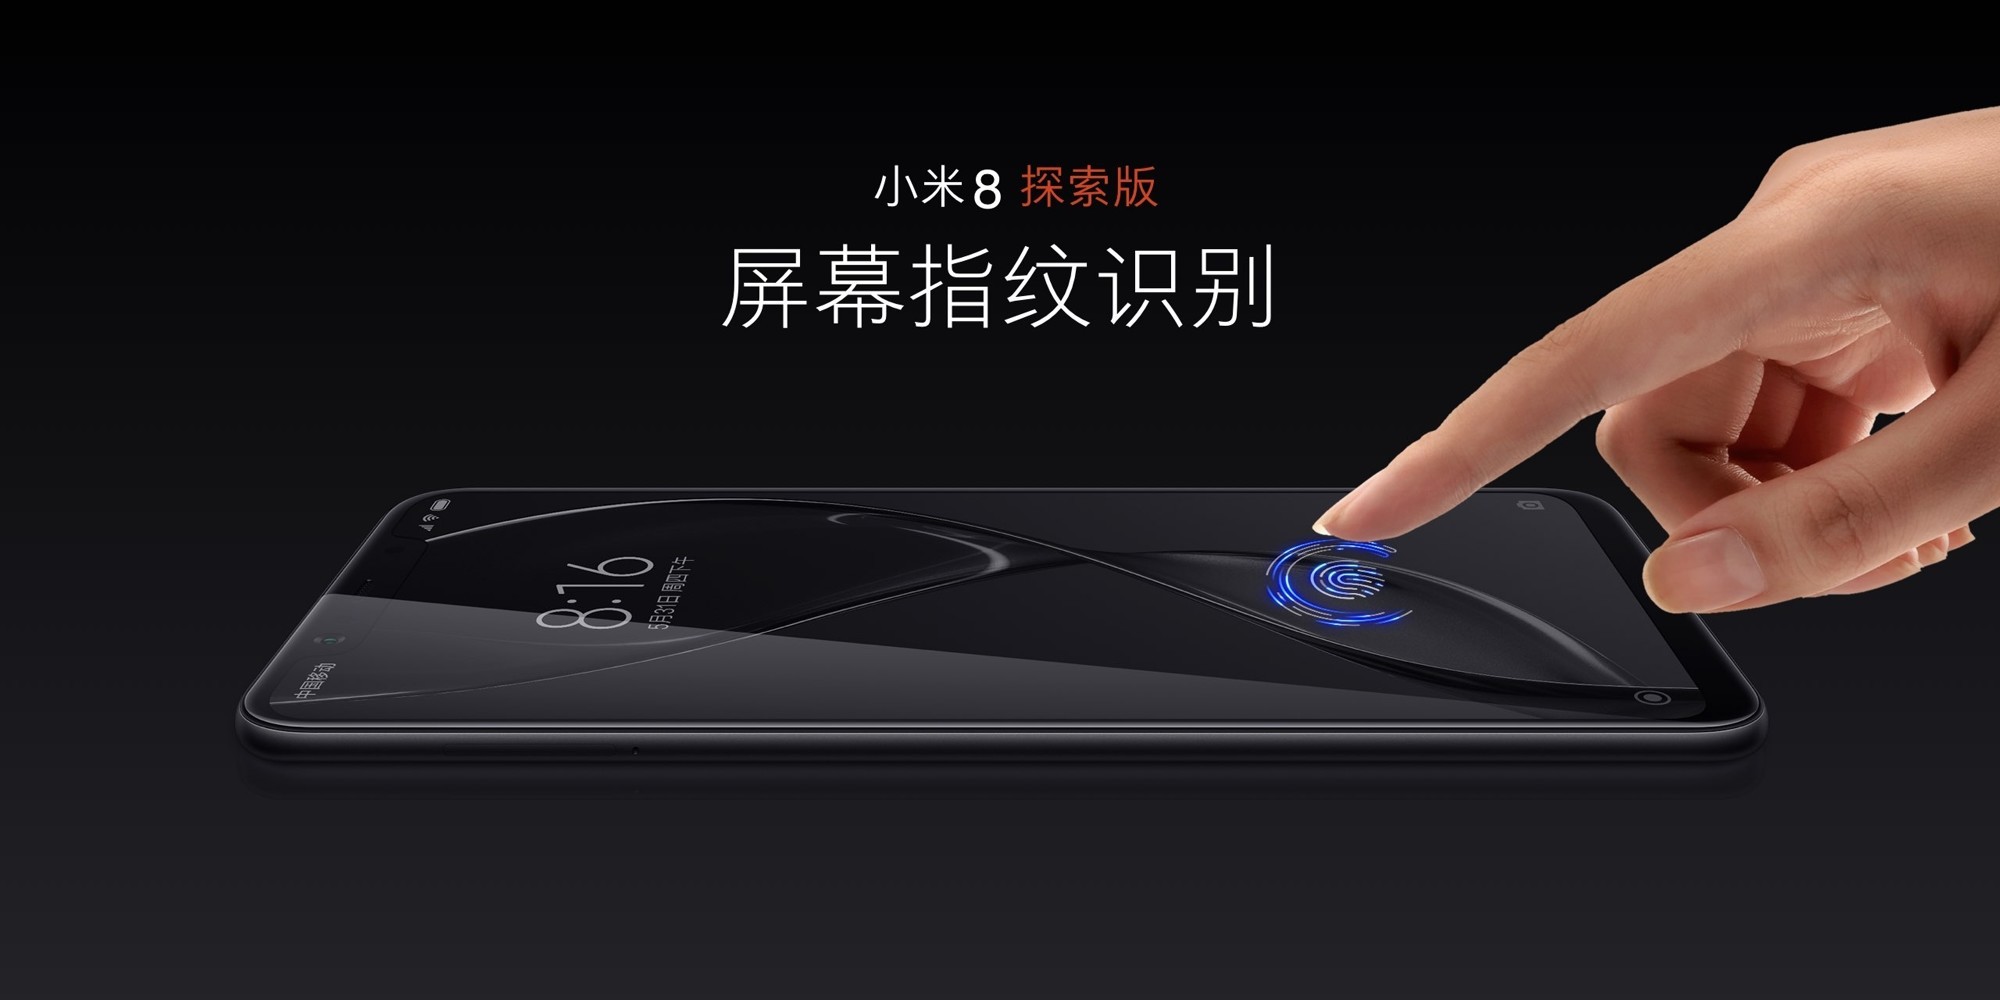 Xiaomi представила новый смартфон Xiaomi Mi 8 с 3D-сканером лица